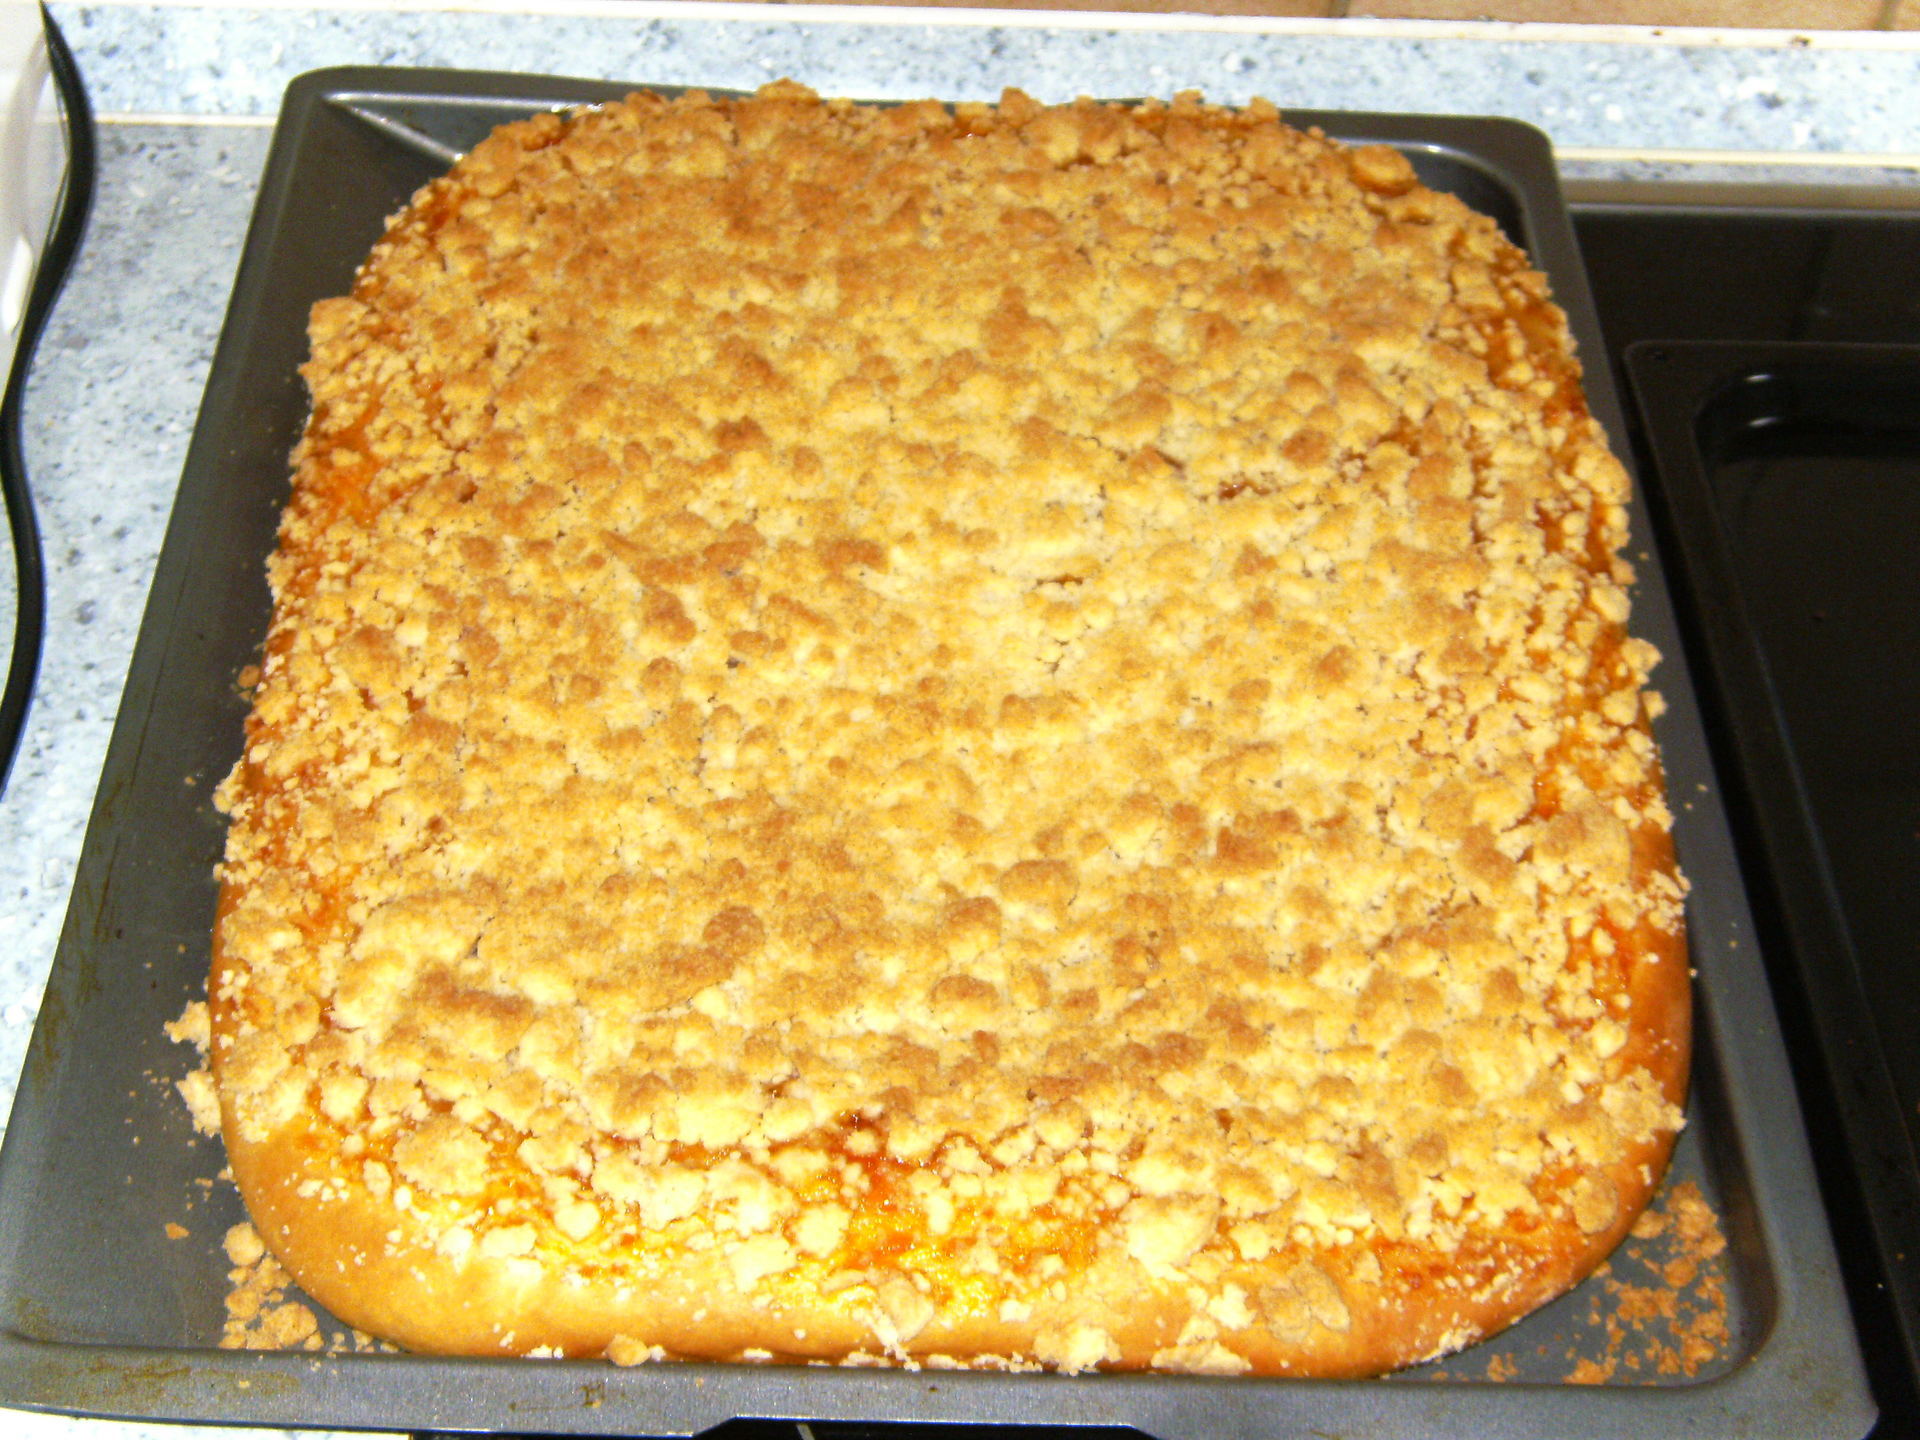 Песочный пирог с безе сверху рецепт с фото пошагово